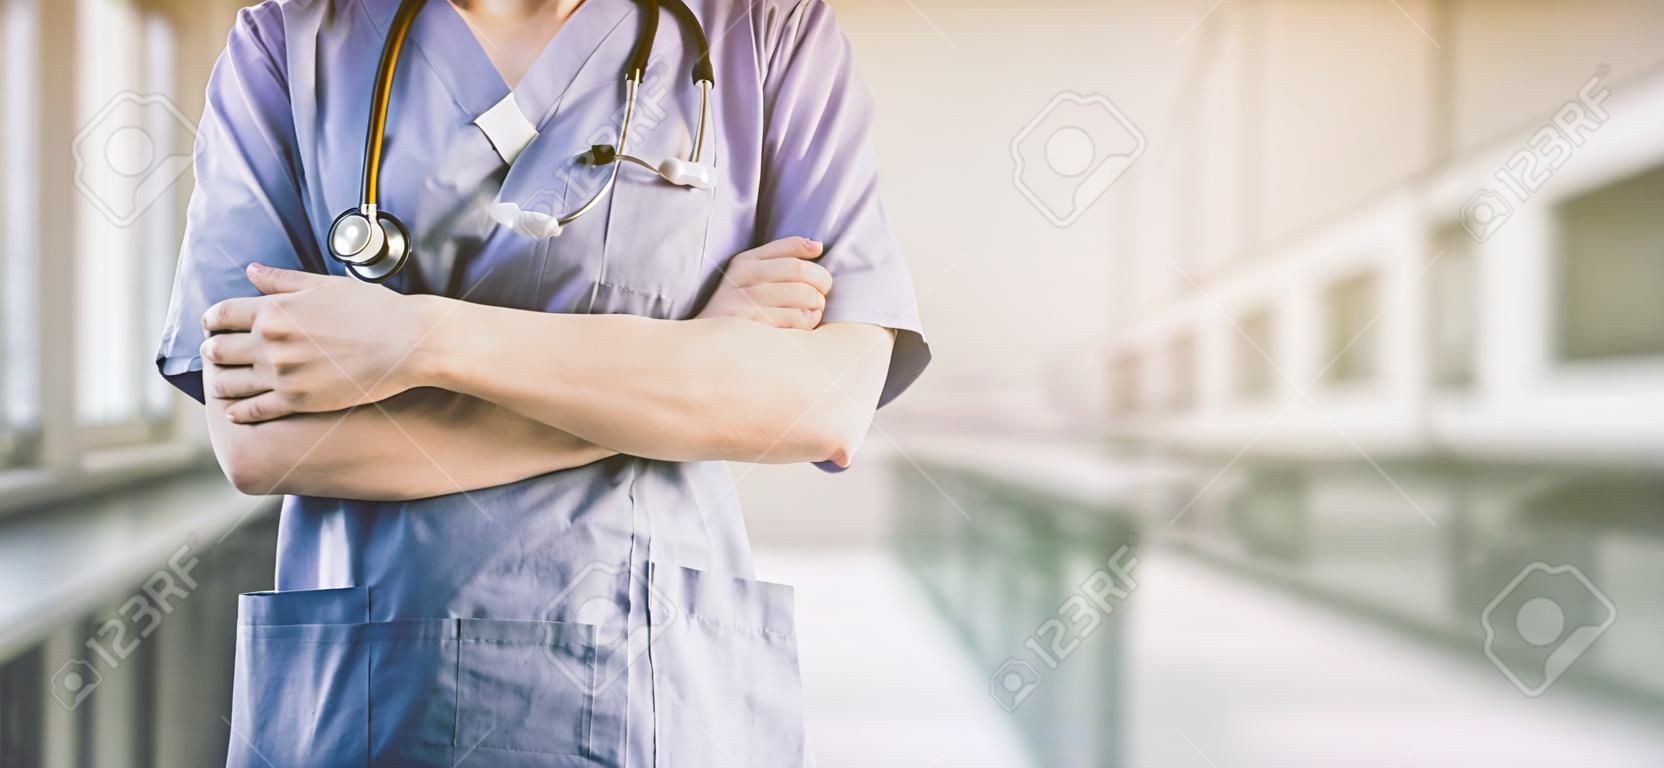 Deux membres du personnel hospitalier - chirurgien, médecin ou infirmière debout avec les bras croisés à l'hôpital. Soins médicaux et service médical.